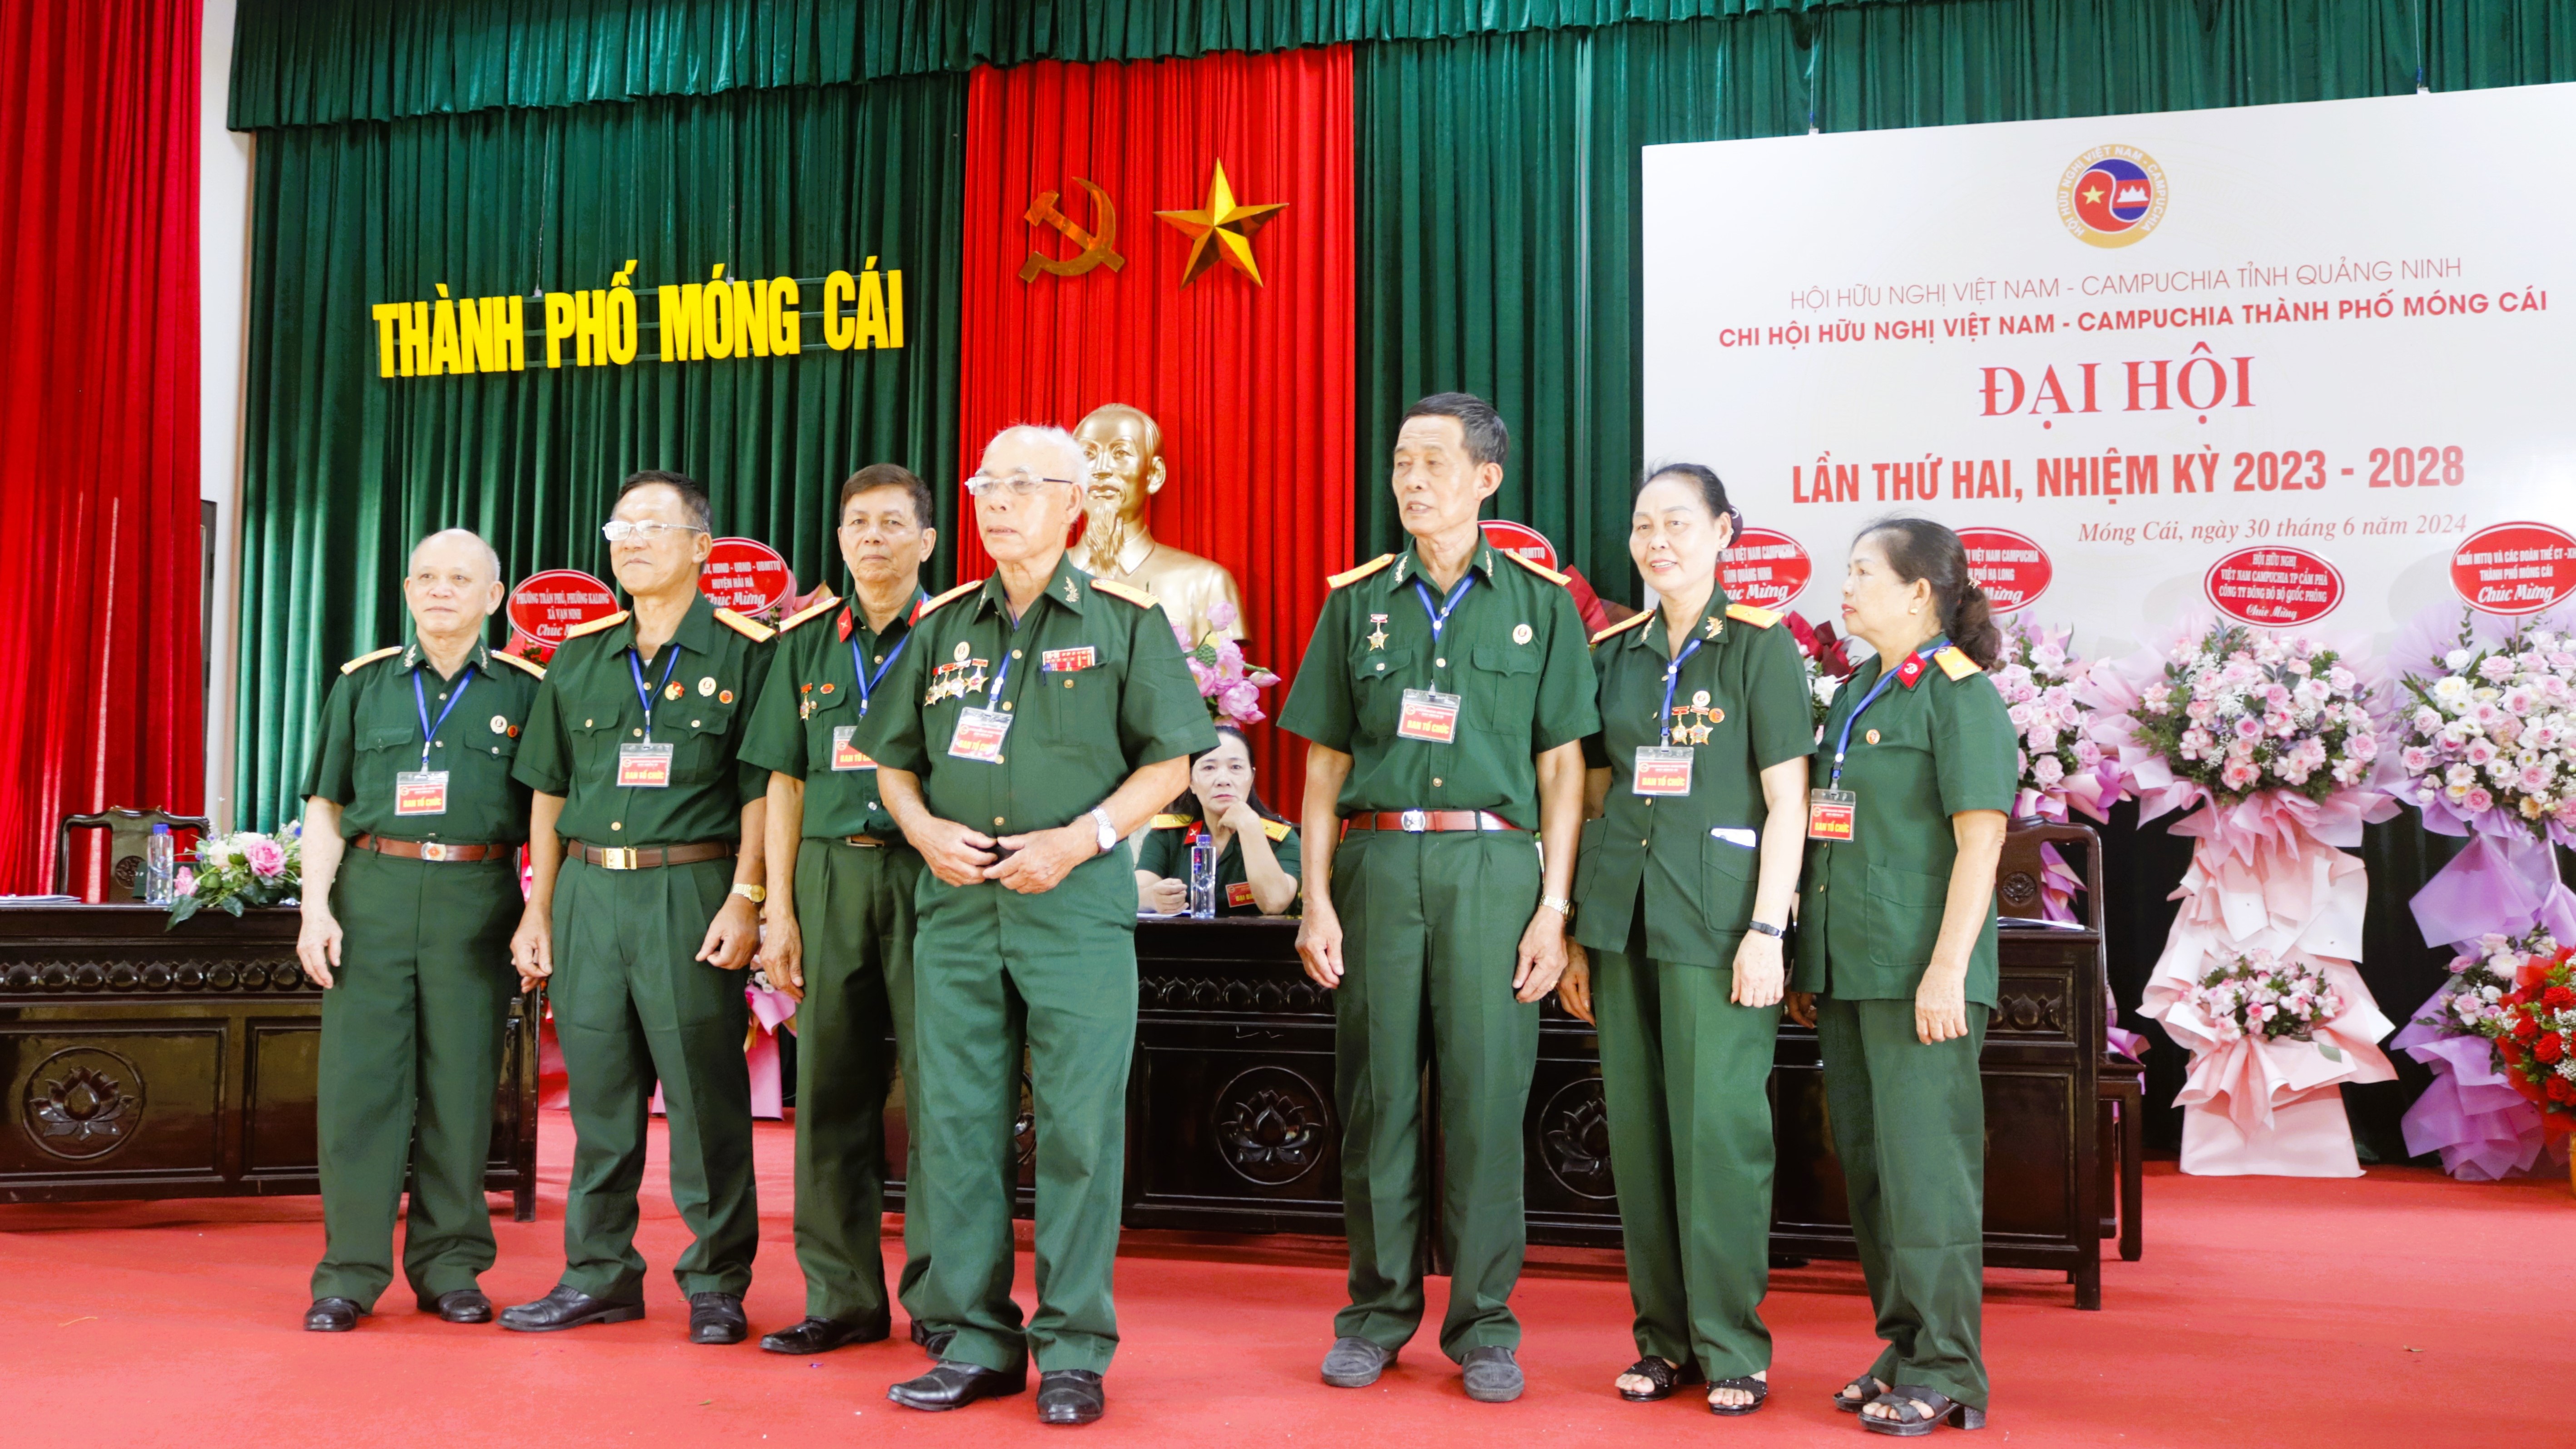 Chi hội hữu nghị Việt Nam - Campuchia thành phố Móng Cái chú trọng phát triển hội viên trong nhiệm kỳ mới